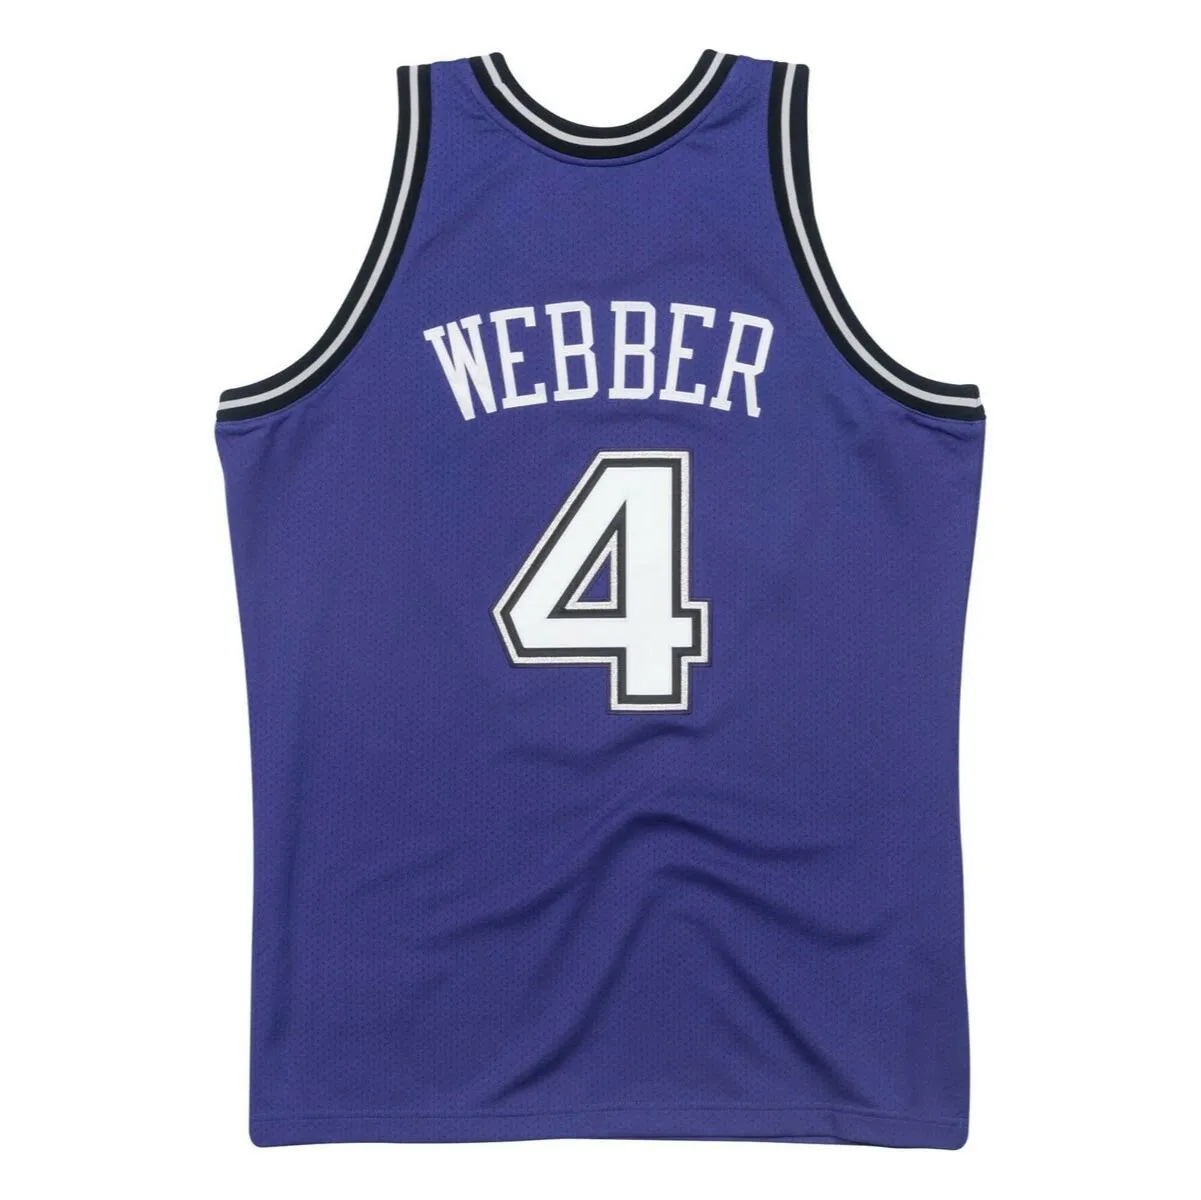 100% genaaid Chris Webber #4 Purple 1998-99 Jersey XS-6XL Mens Throwbacks Basketball Jerseys goedkope mannen vrouwen jeugd